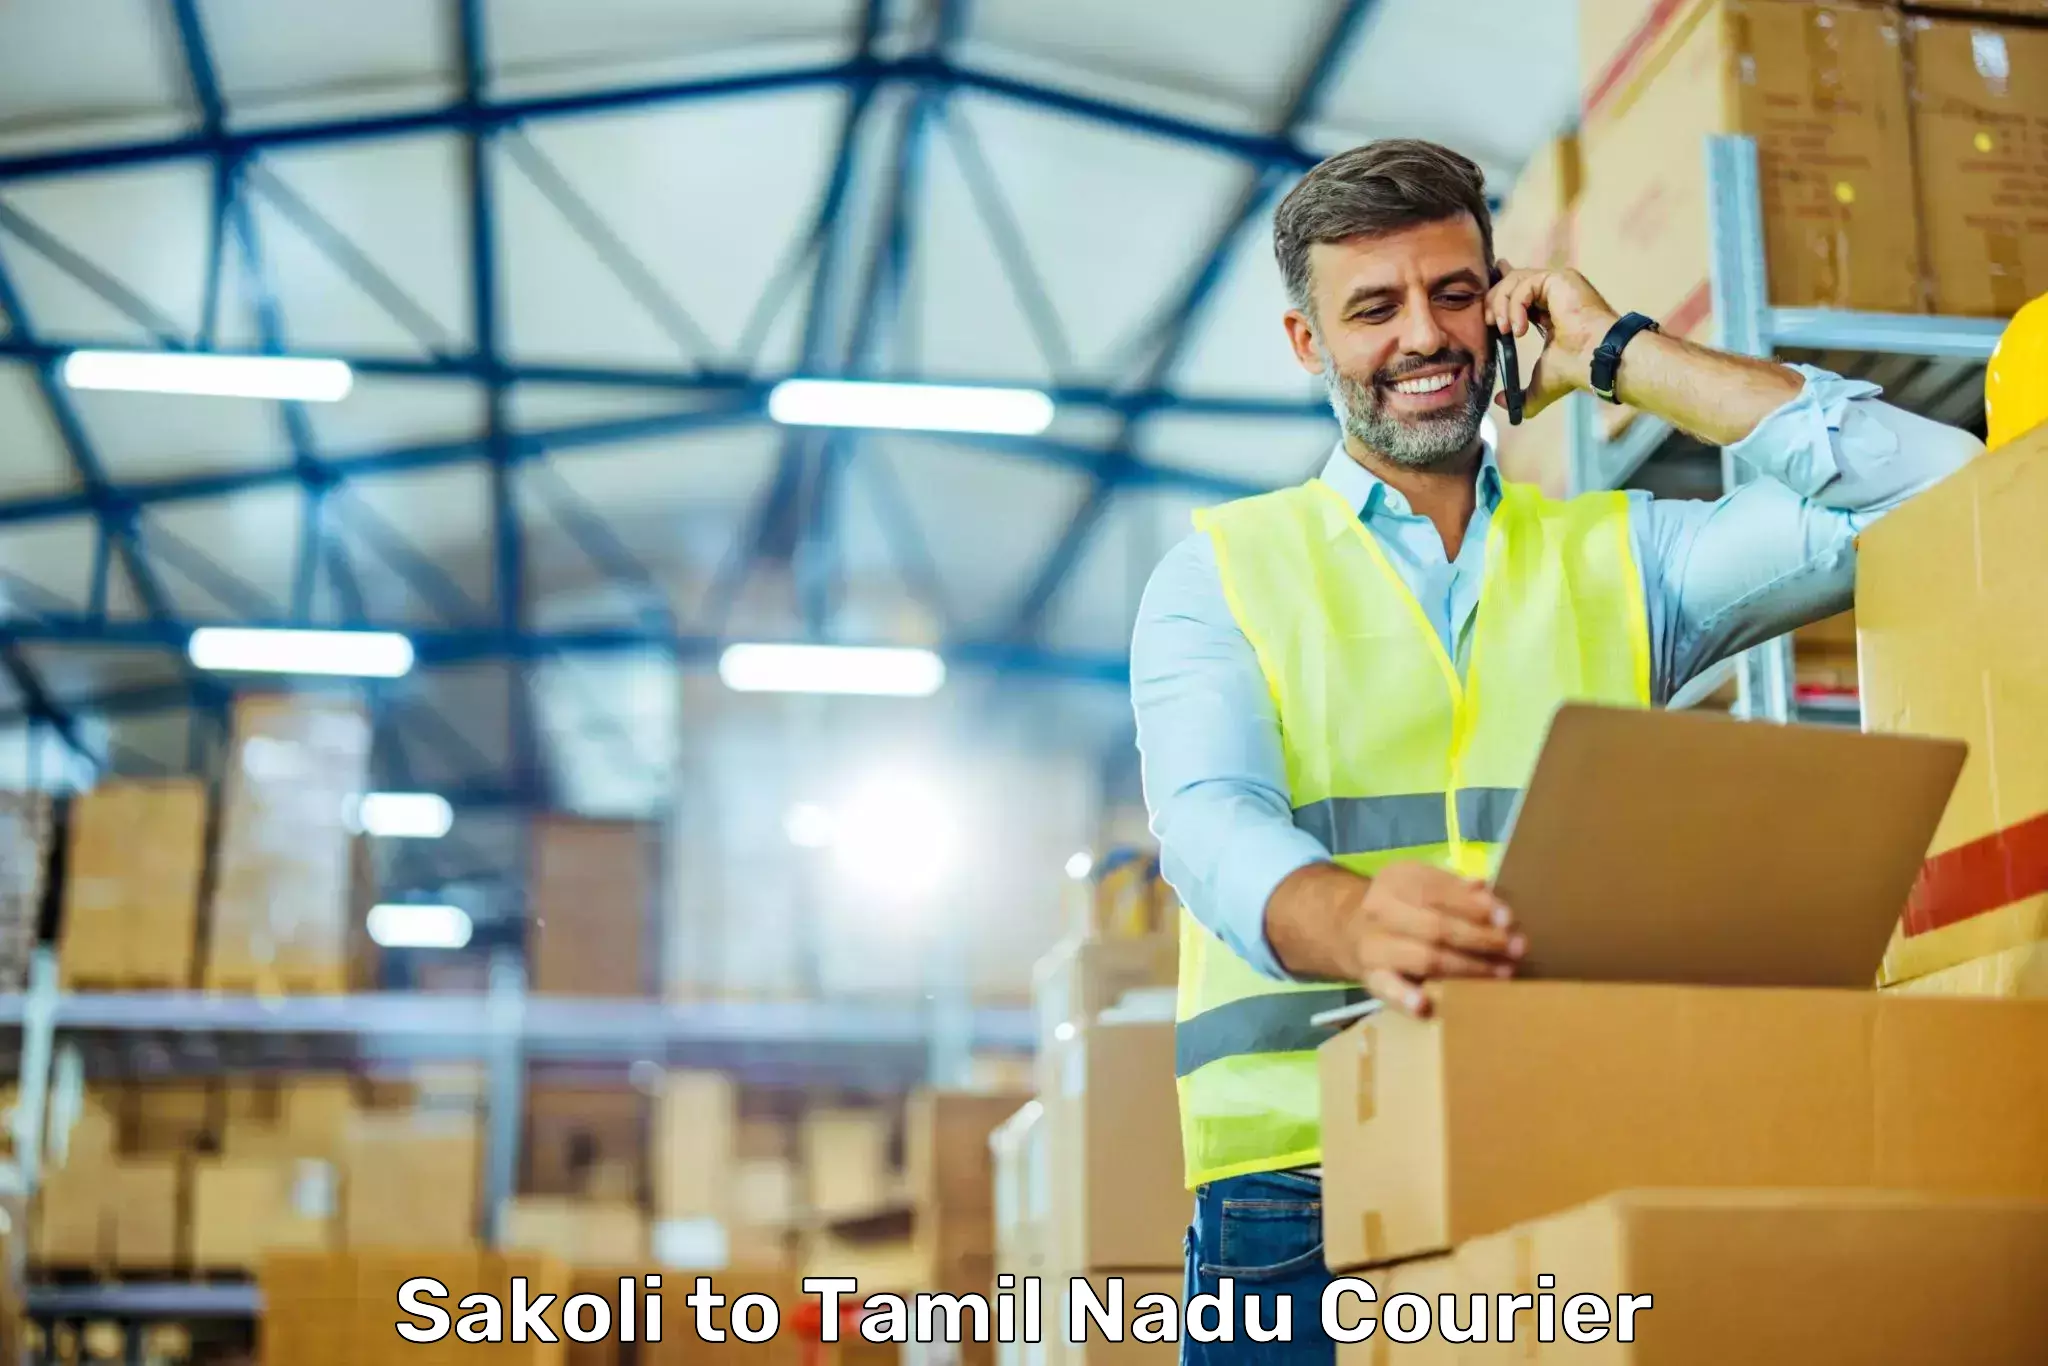 High-priority parcel service Sakoli to Eral